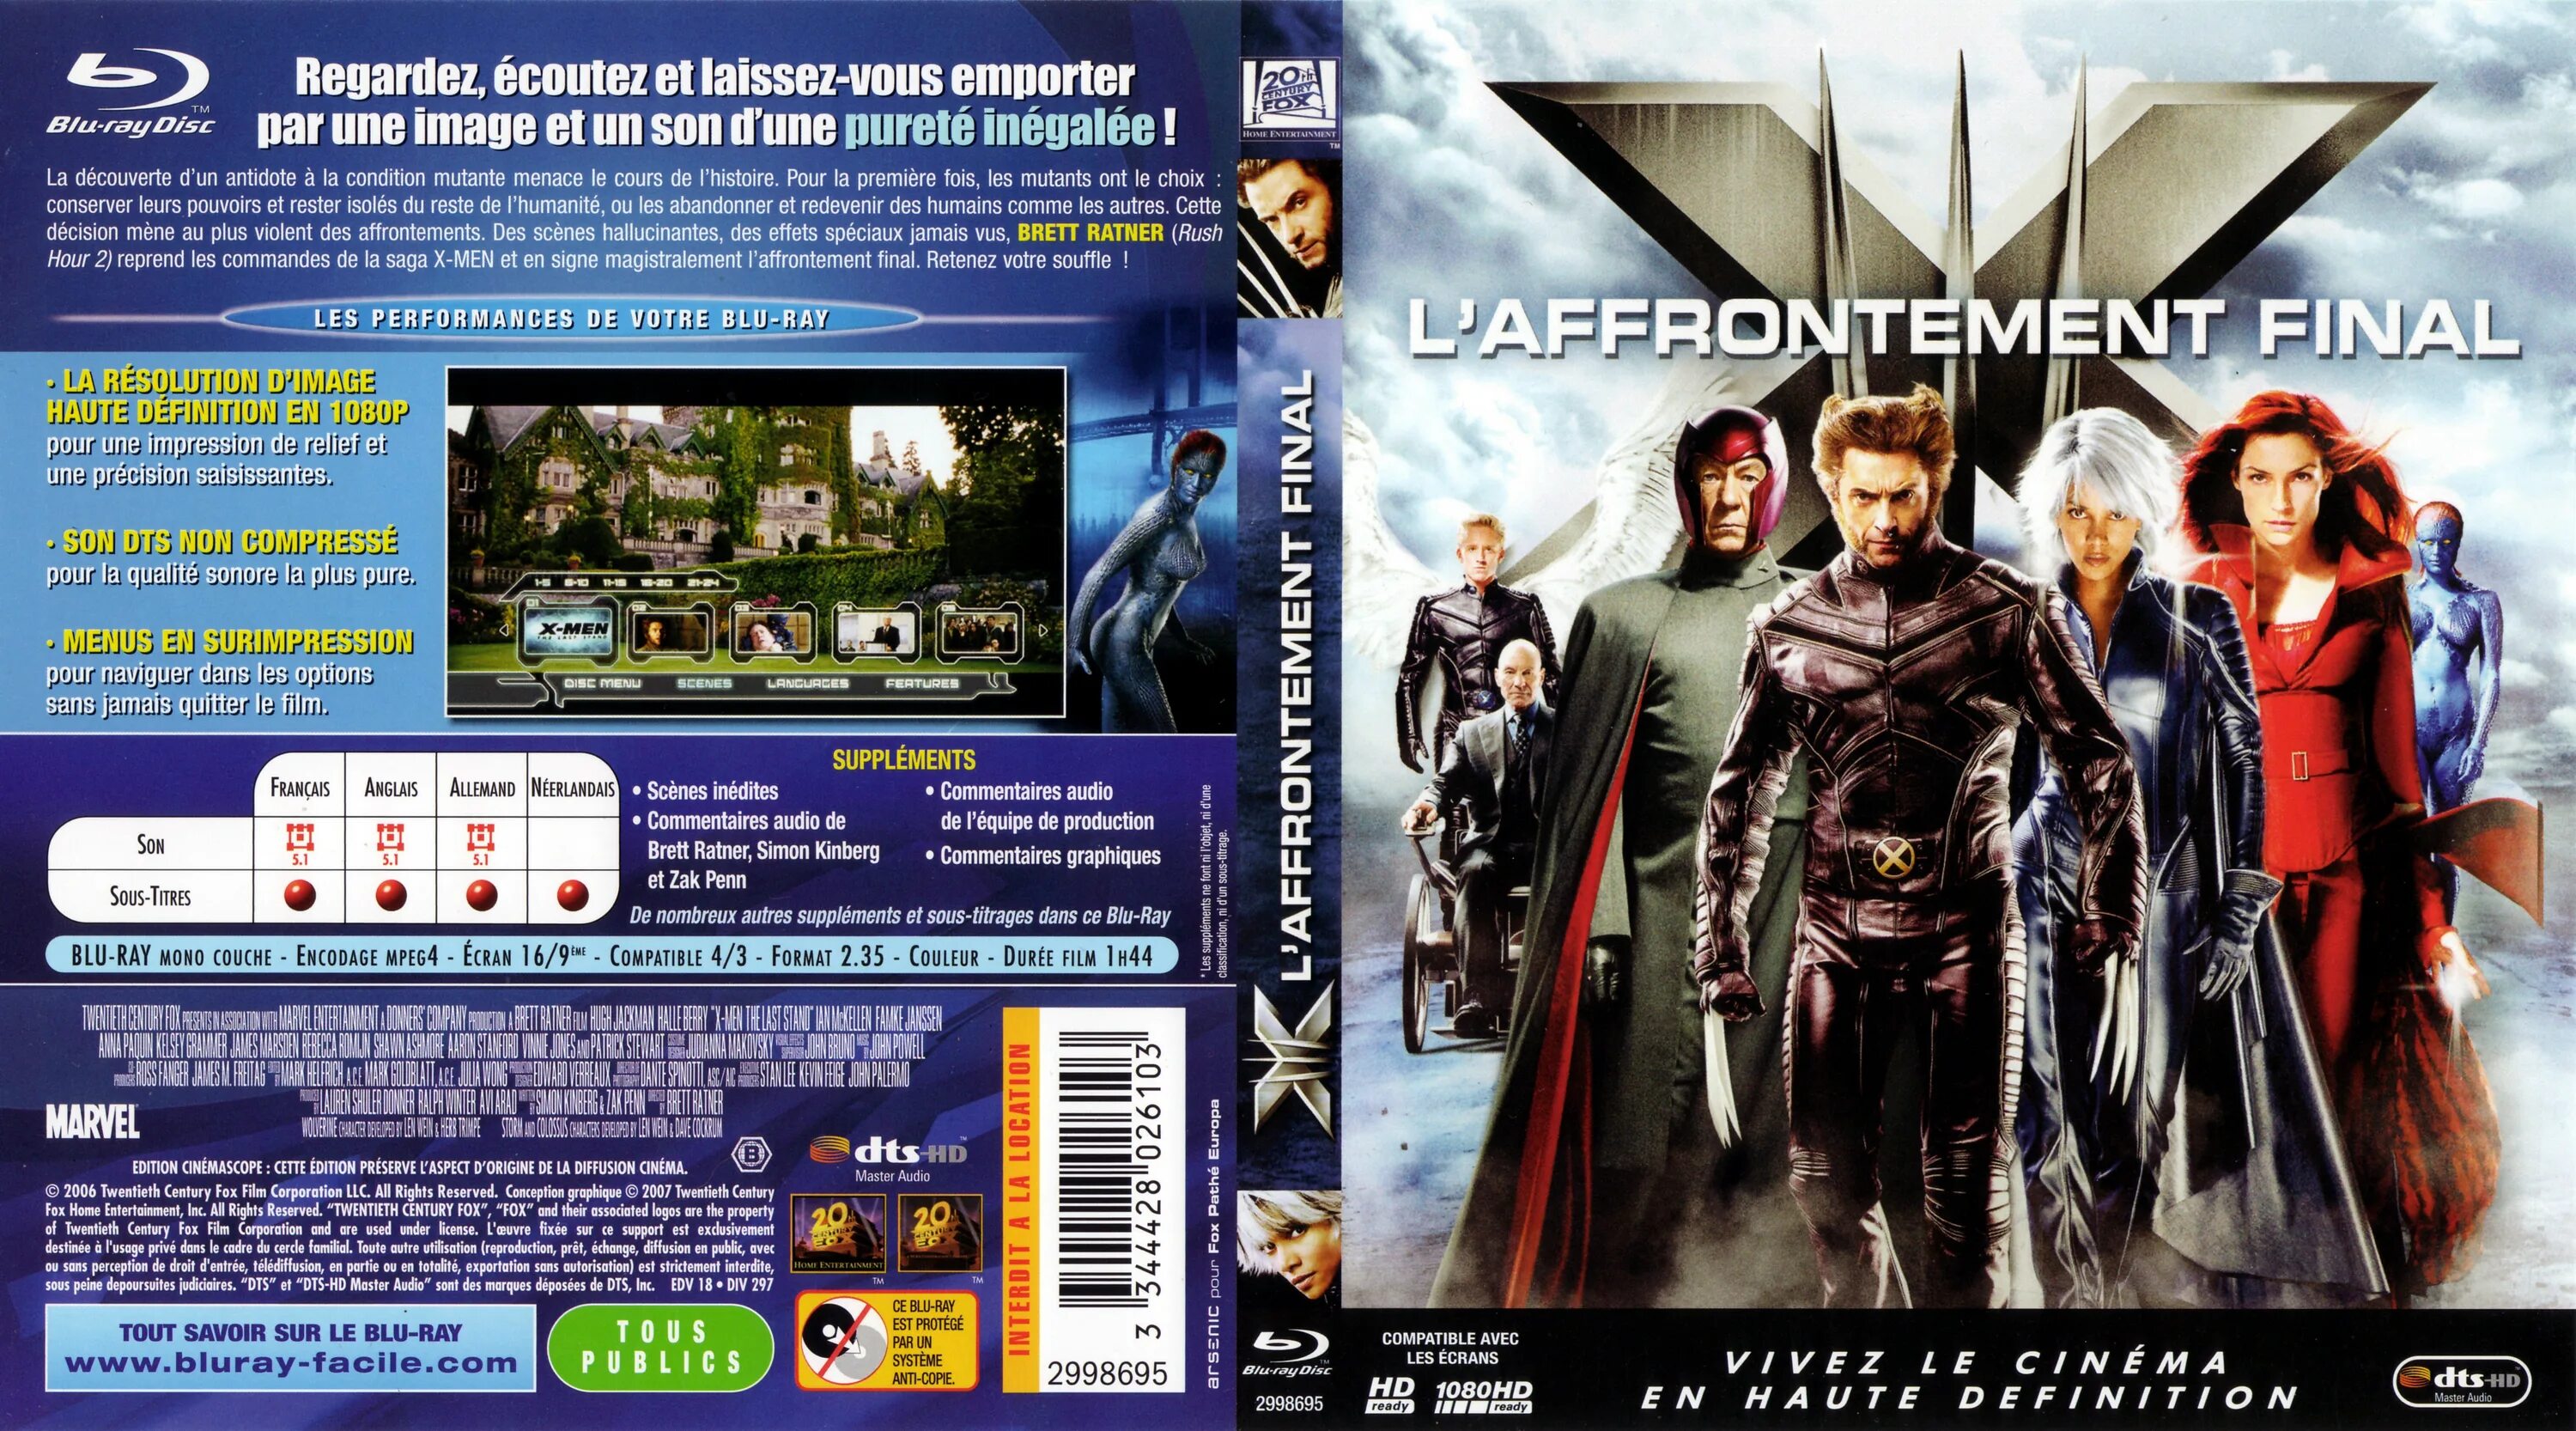 Blu ray магическая битва 2. X-men 2000 Blu ray. X-men 2006 Blu ray. X2 (2003) Blu-ray Cover. Люди Икс 3 Blu ray.